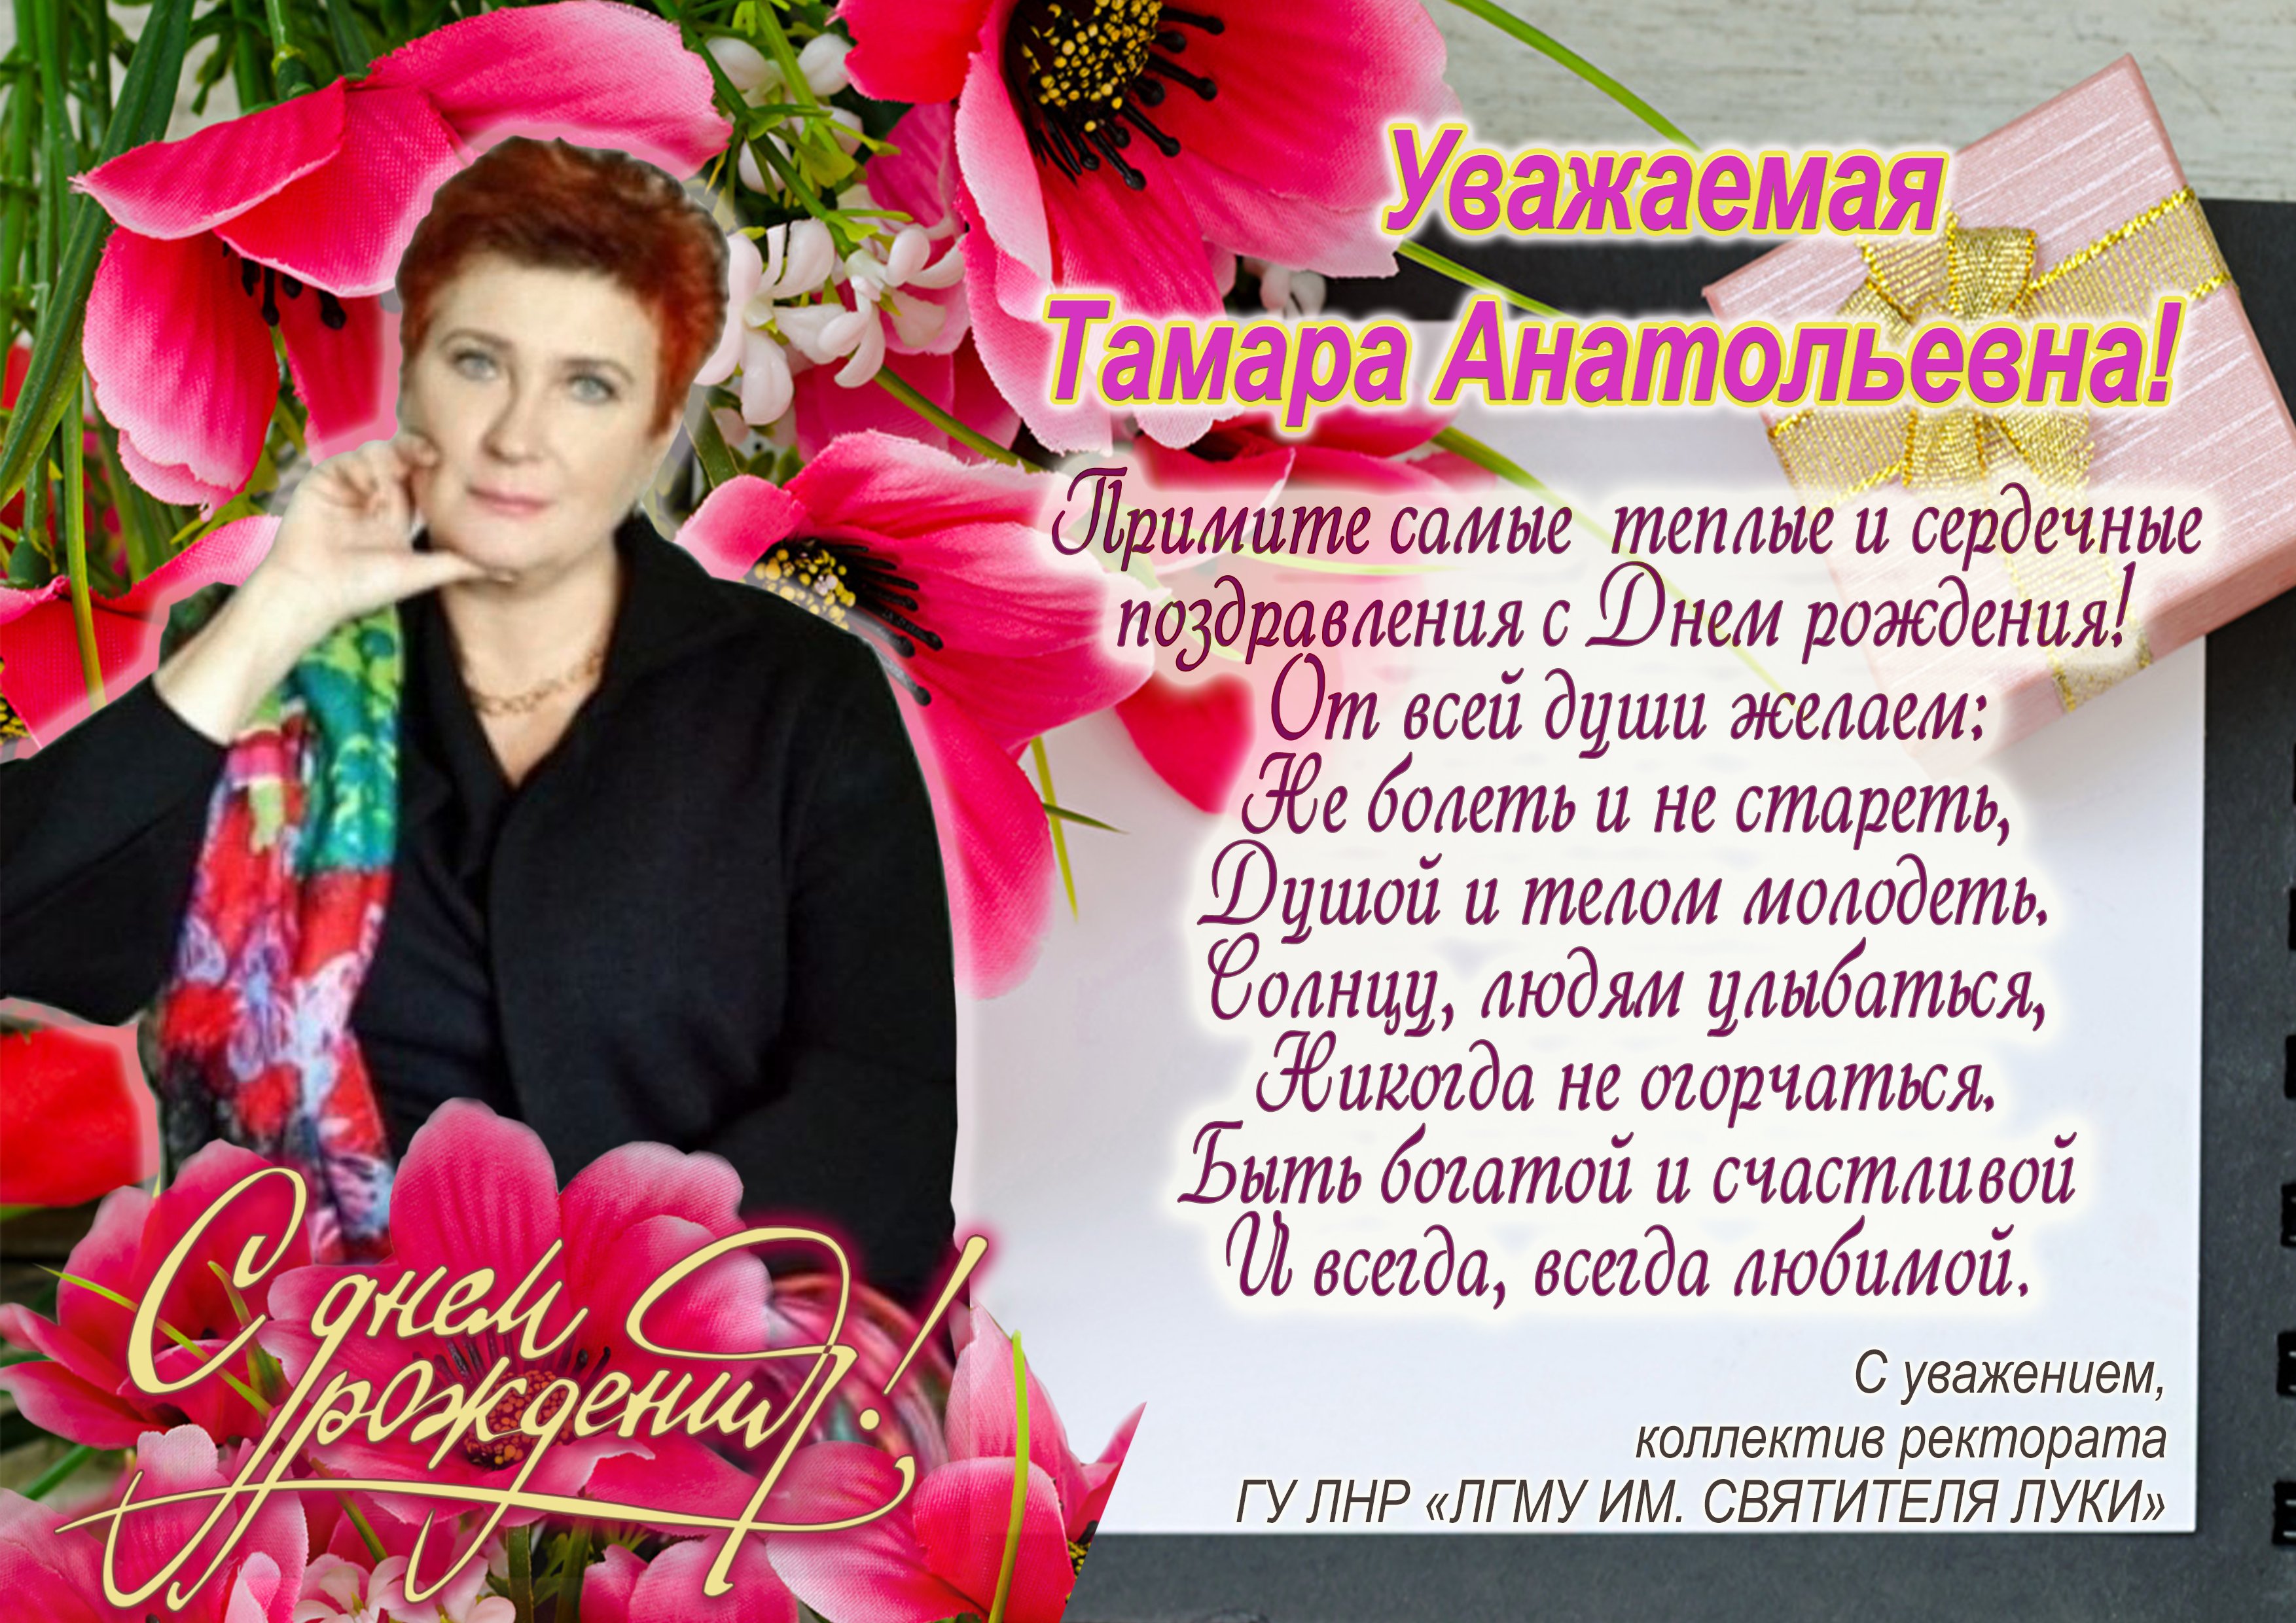 Тамара Петровна с днем рождения